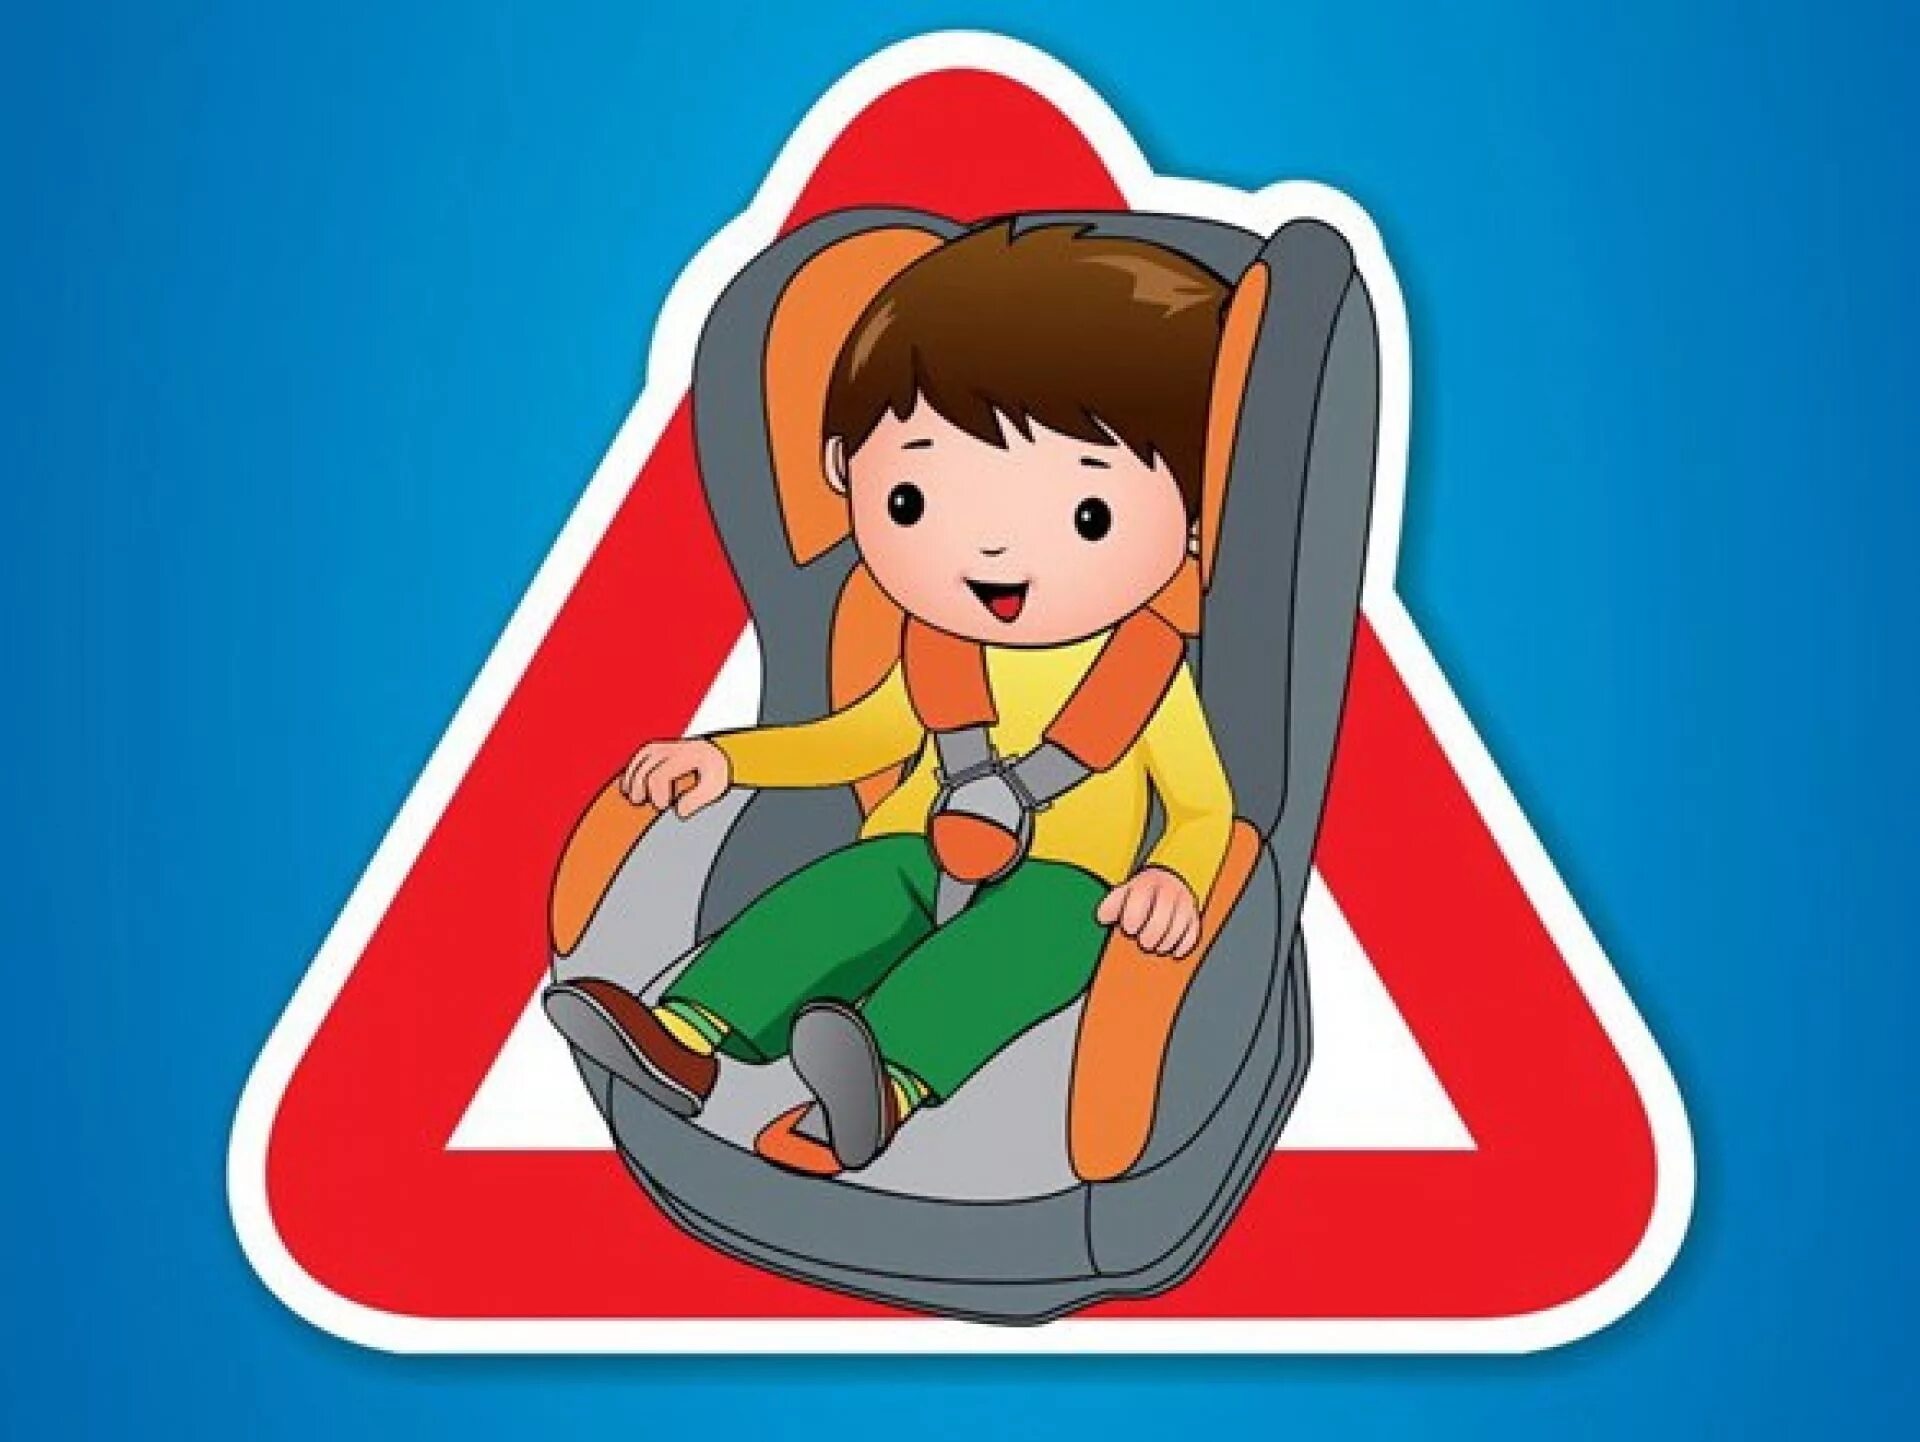 Правила безопасности в автомобиле. Автокресло для детей. Ребенок главный пассажир. Ребенок в автокресле. Безопасность детей в автомобиле.